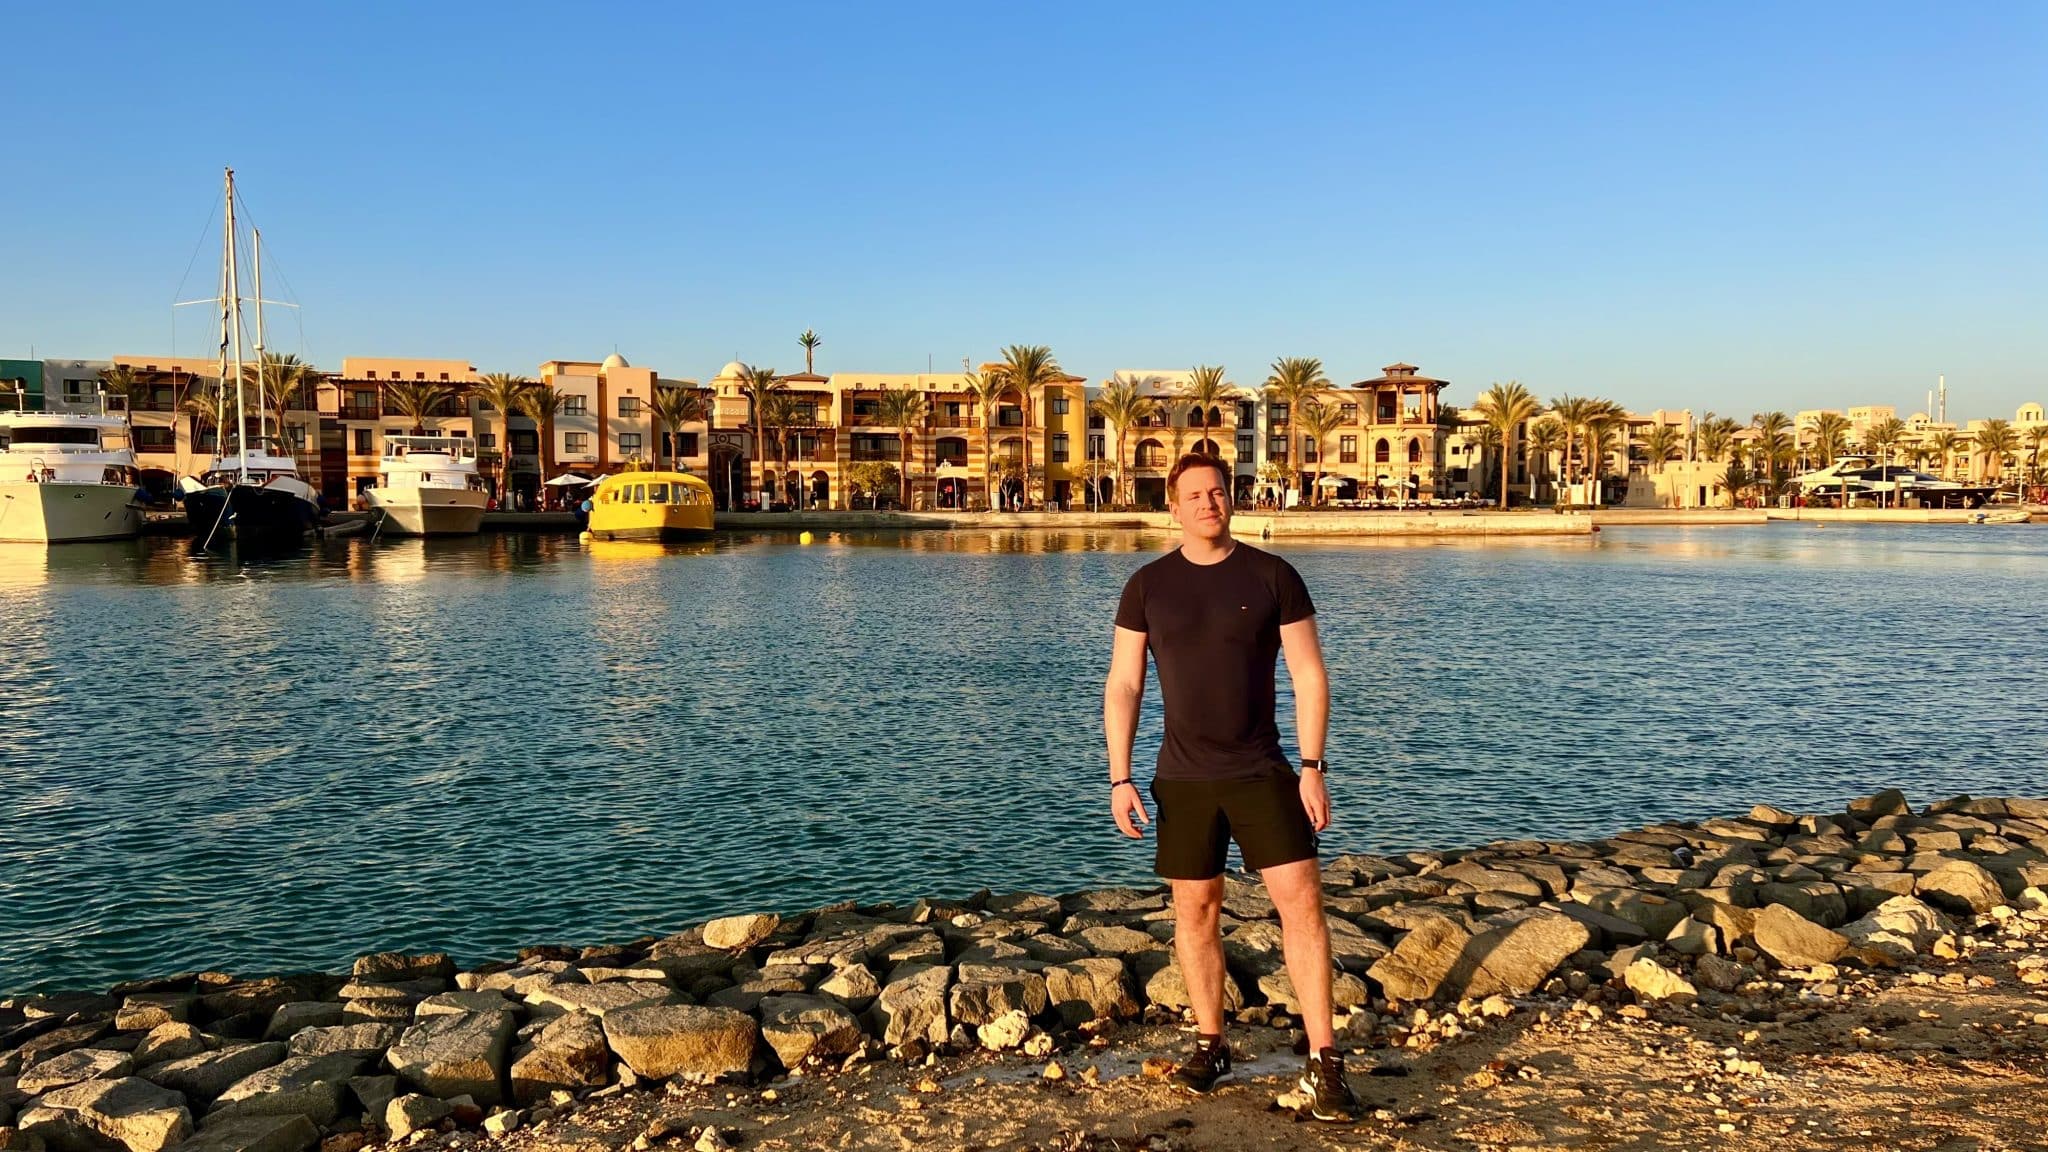 Rapporto sull'esperienza di fare jogging in Egitto: camminare nel deserto?